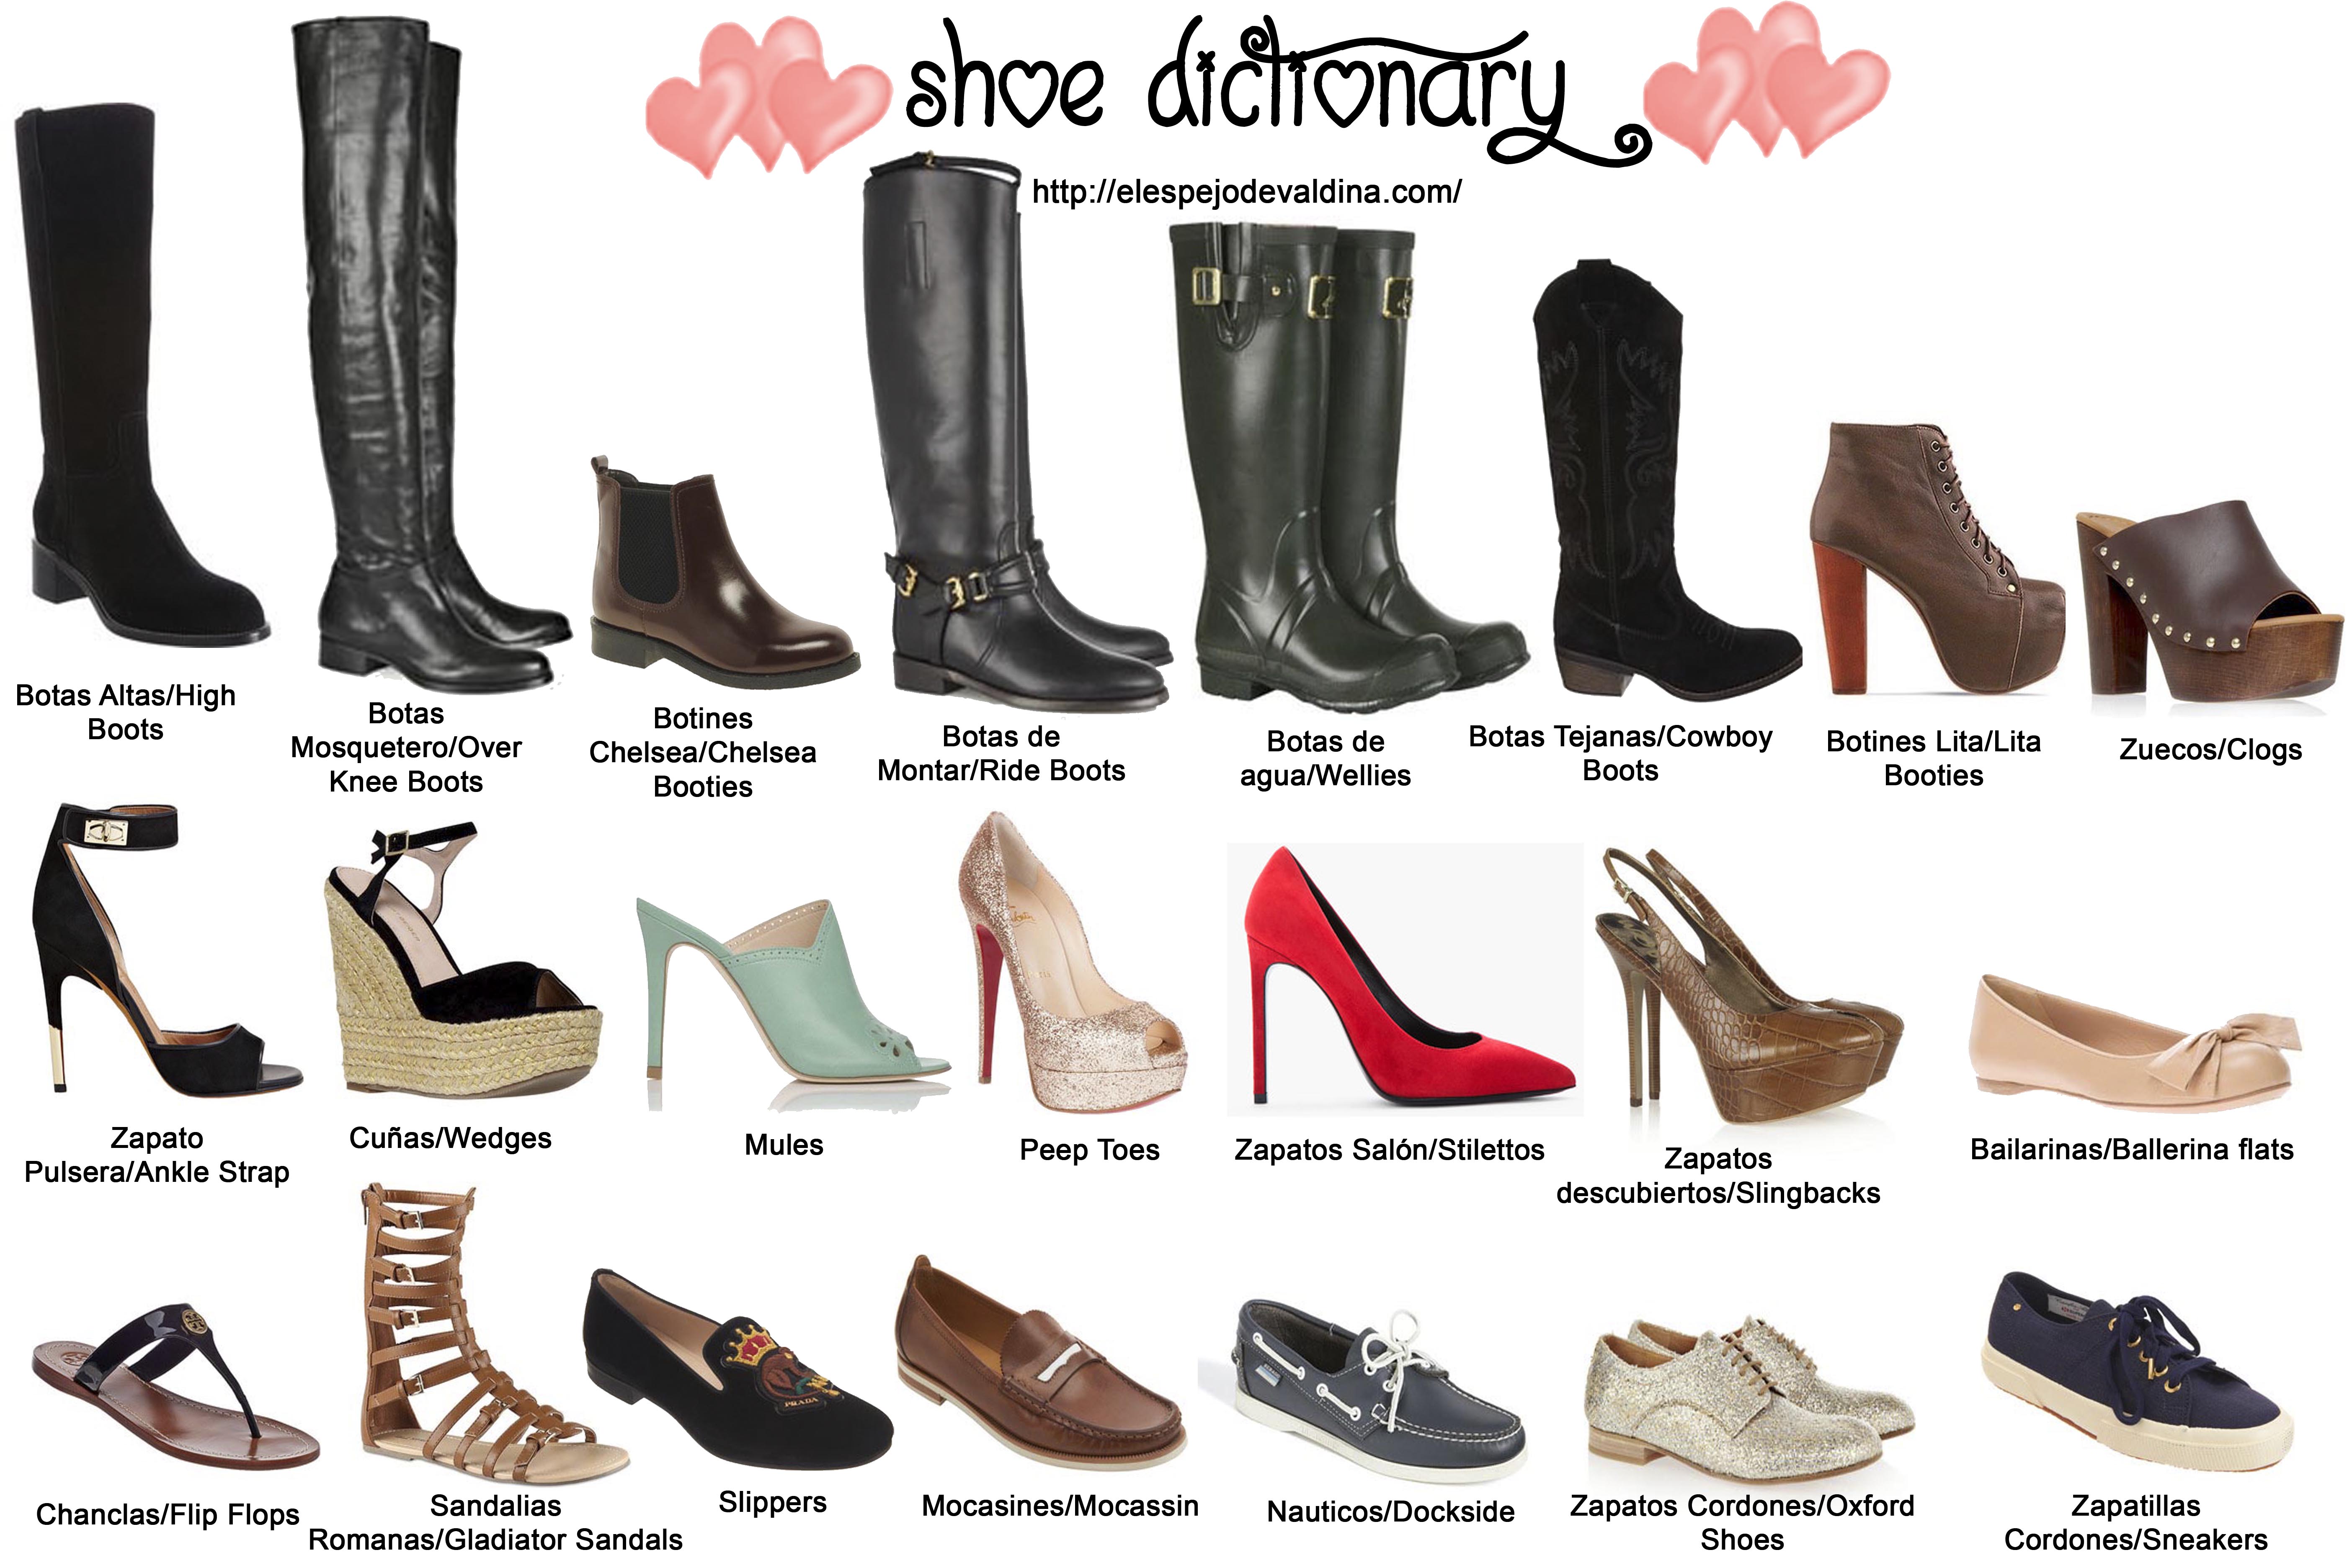 Название летней женской обуви. Модели женской обуви. Женская обувь названия моделей. Название модной обуви. Типы женской обуви названия.